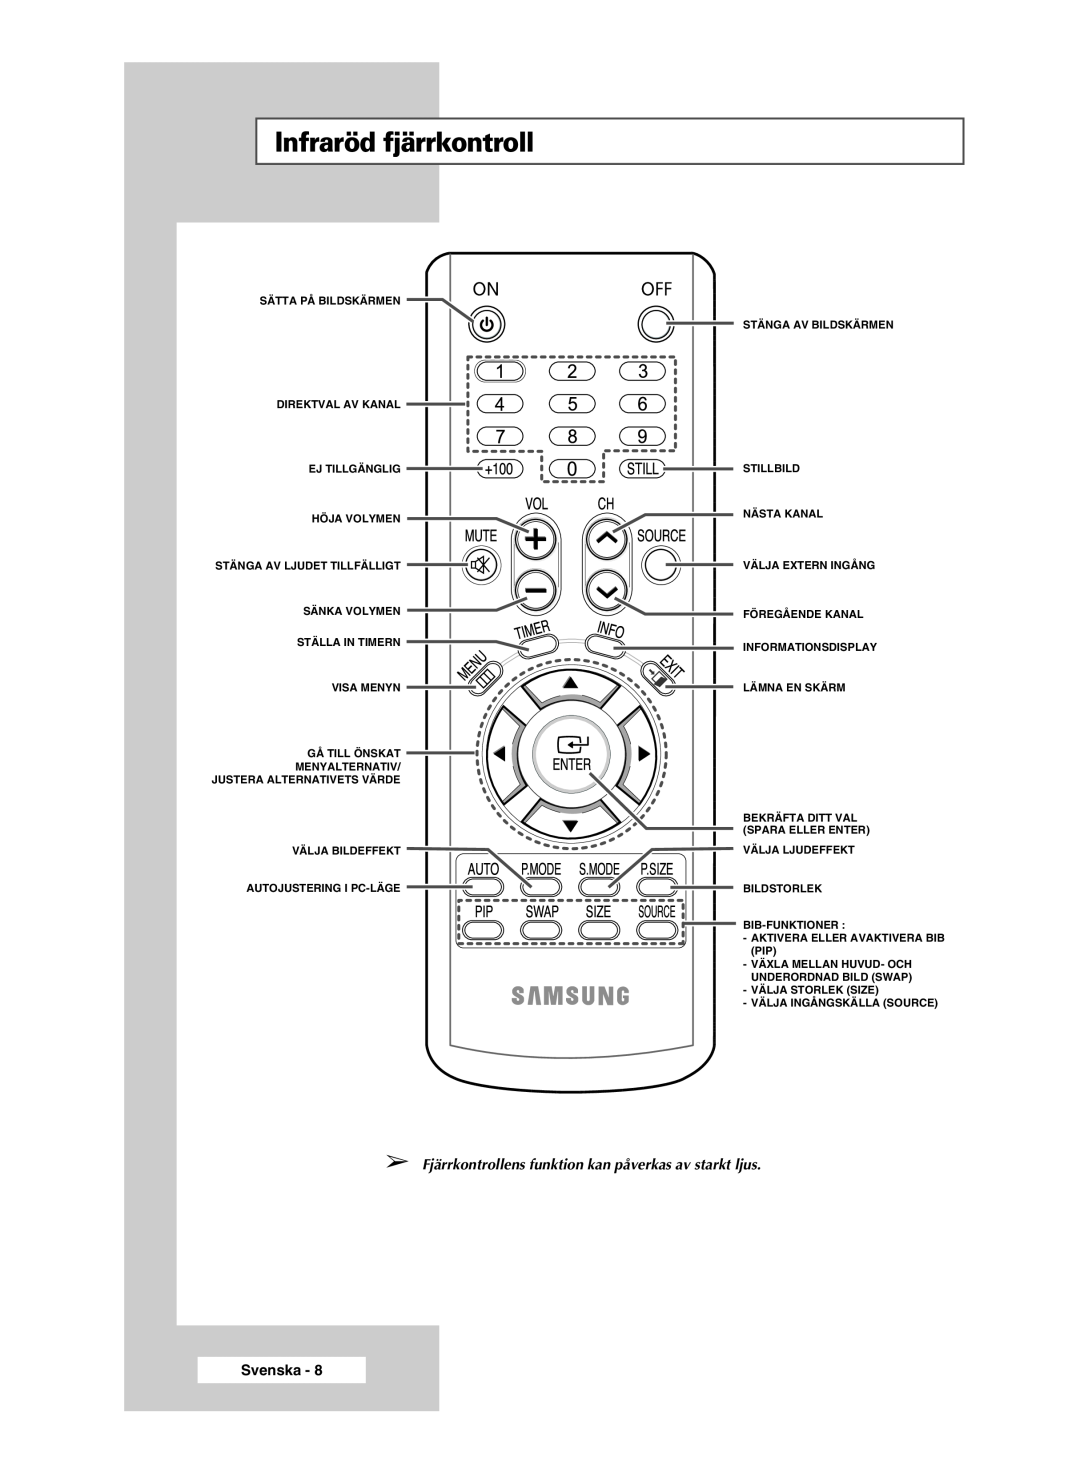 Samsung PPM42M5SSX/EDC manual Infraröd fjärrkontroll, Fjärrkontrollens funktion kan påverkas av starkt ljus, Svenska 